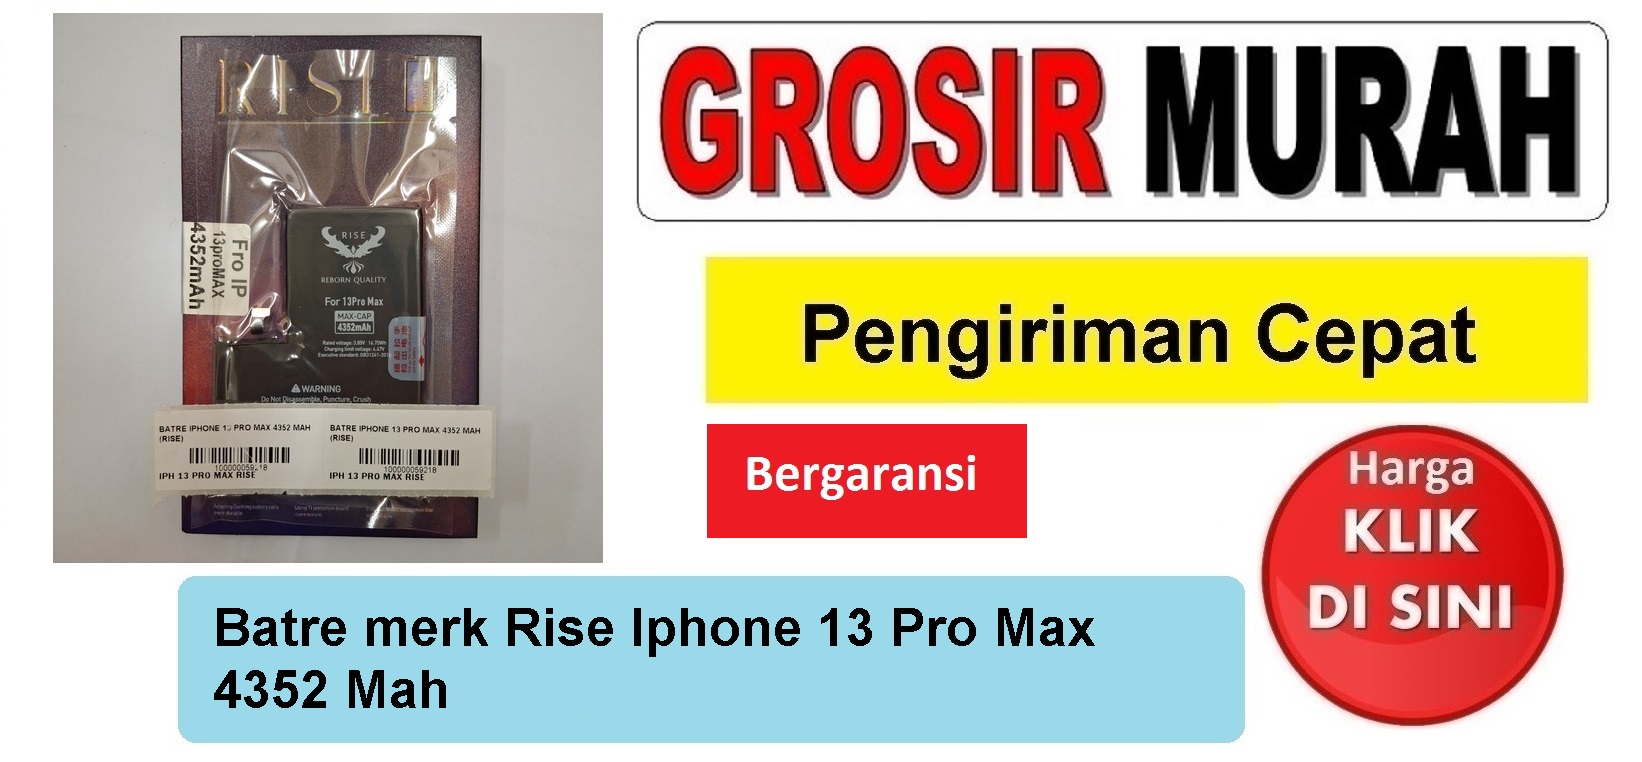 Batre merk Rise Iphone 13 Pro Max 4352 Mah Baterai Battery Bergaransi Batere